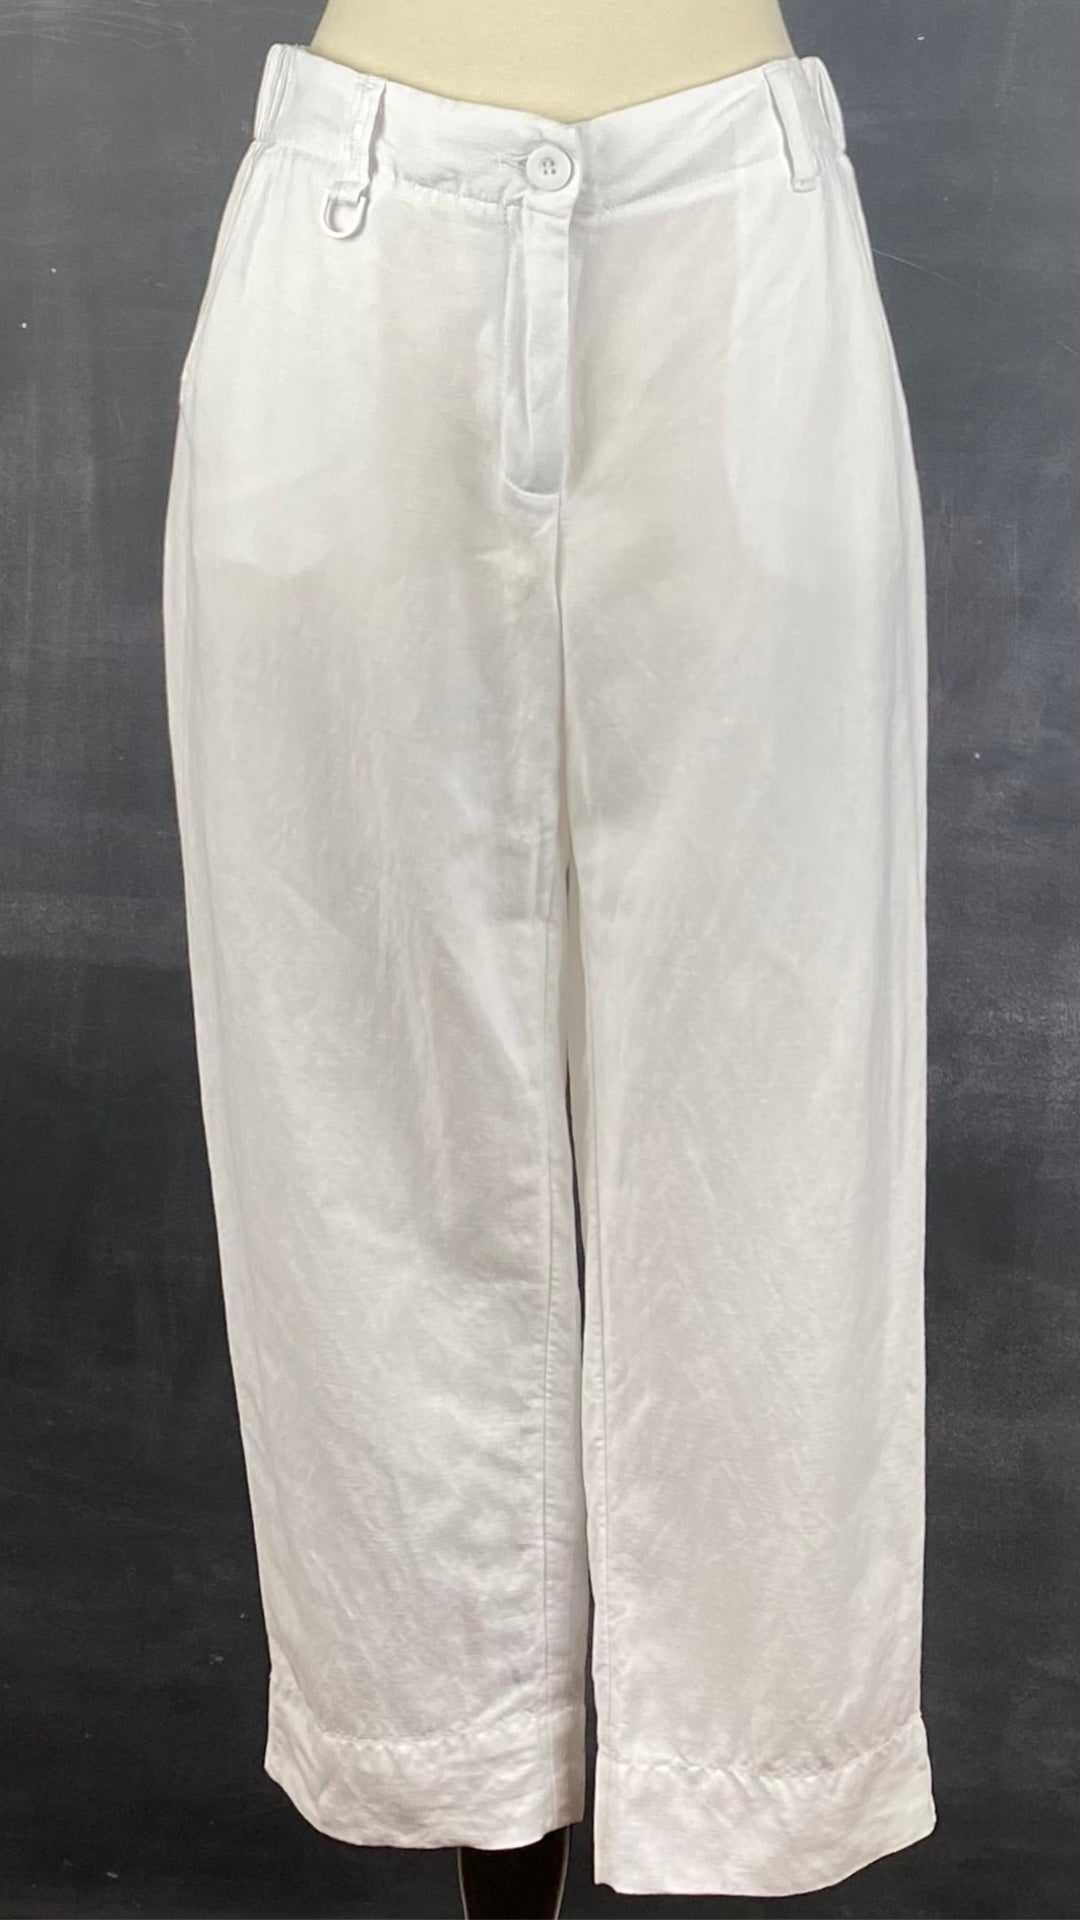 Pantalon blanc longueur 3/4 en mélange de lin Melanie Lyne, taille 4. Vue de face, sur un mannequin.